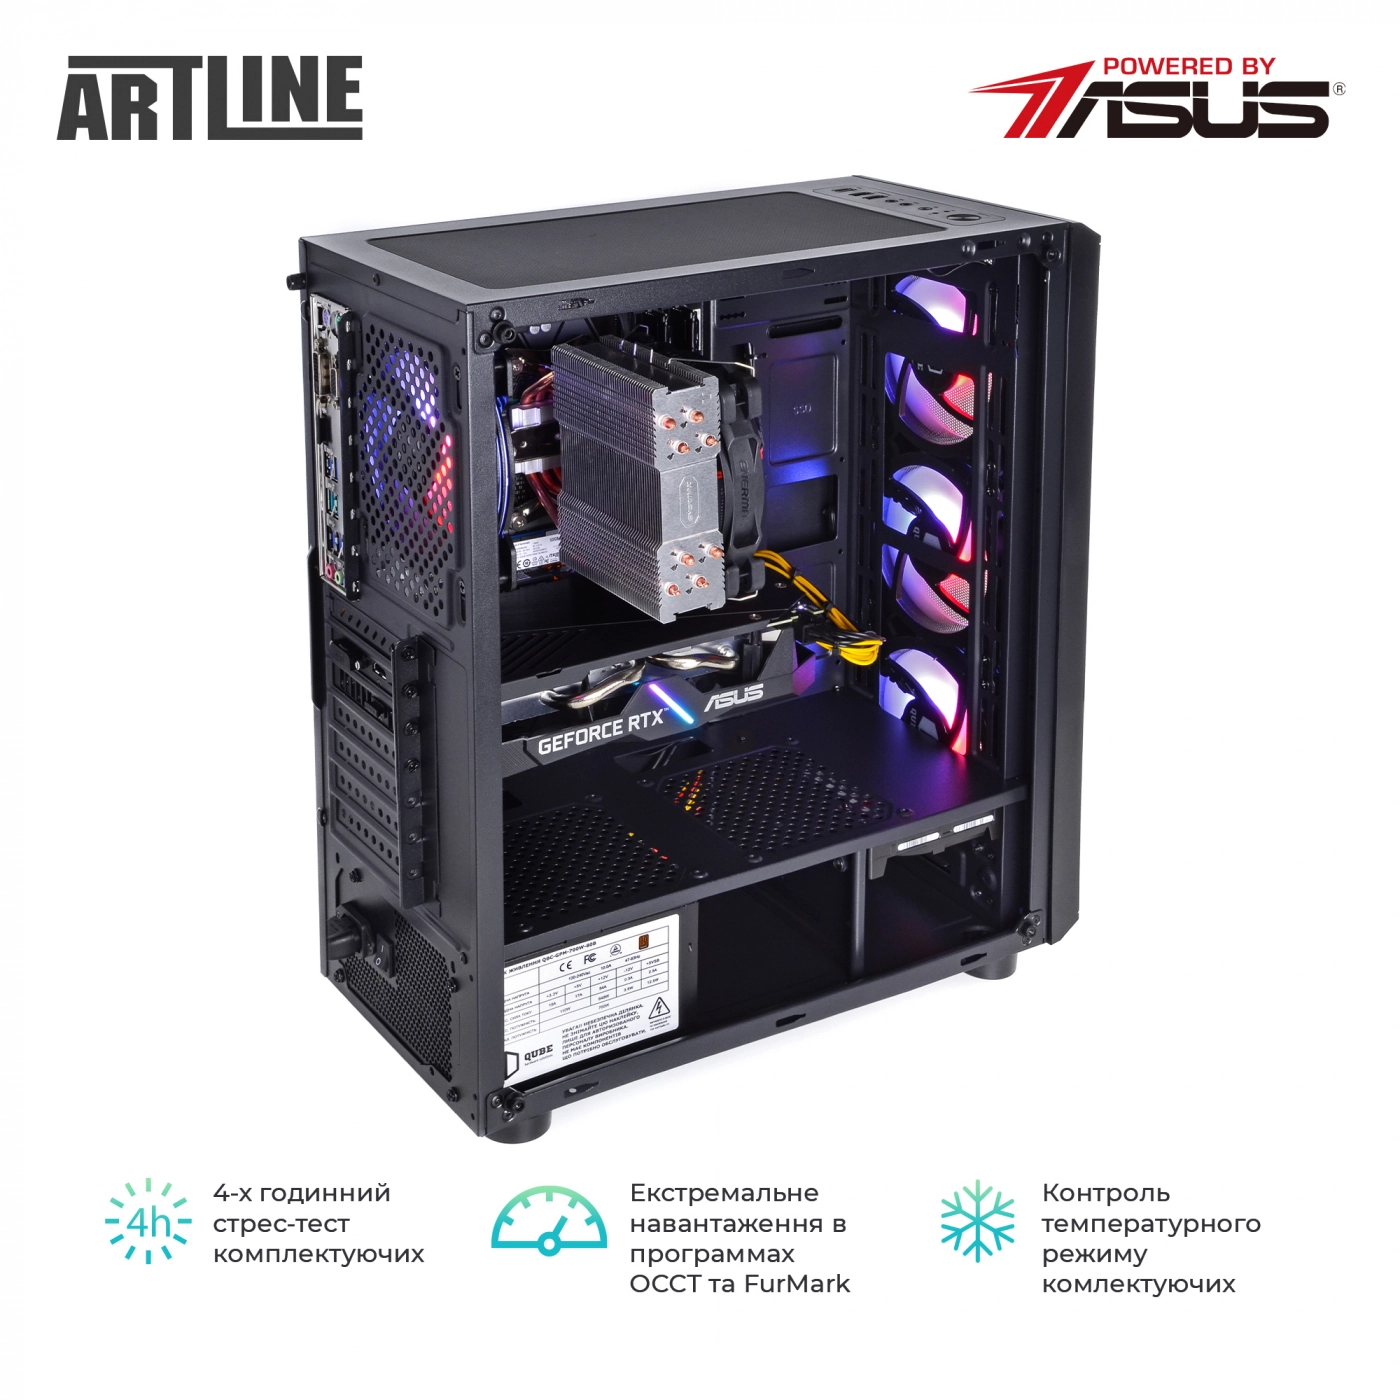 Купить Компьютер ARTLINE Gaming X73v12 - фото 9